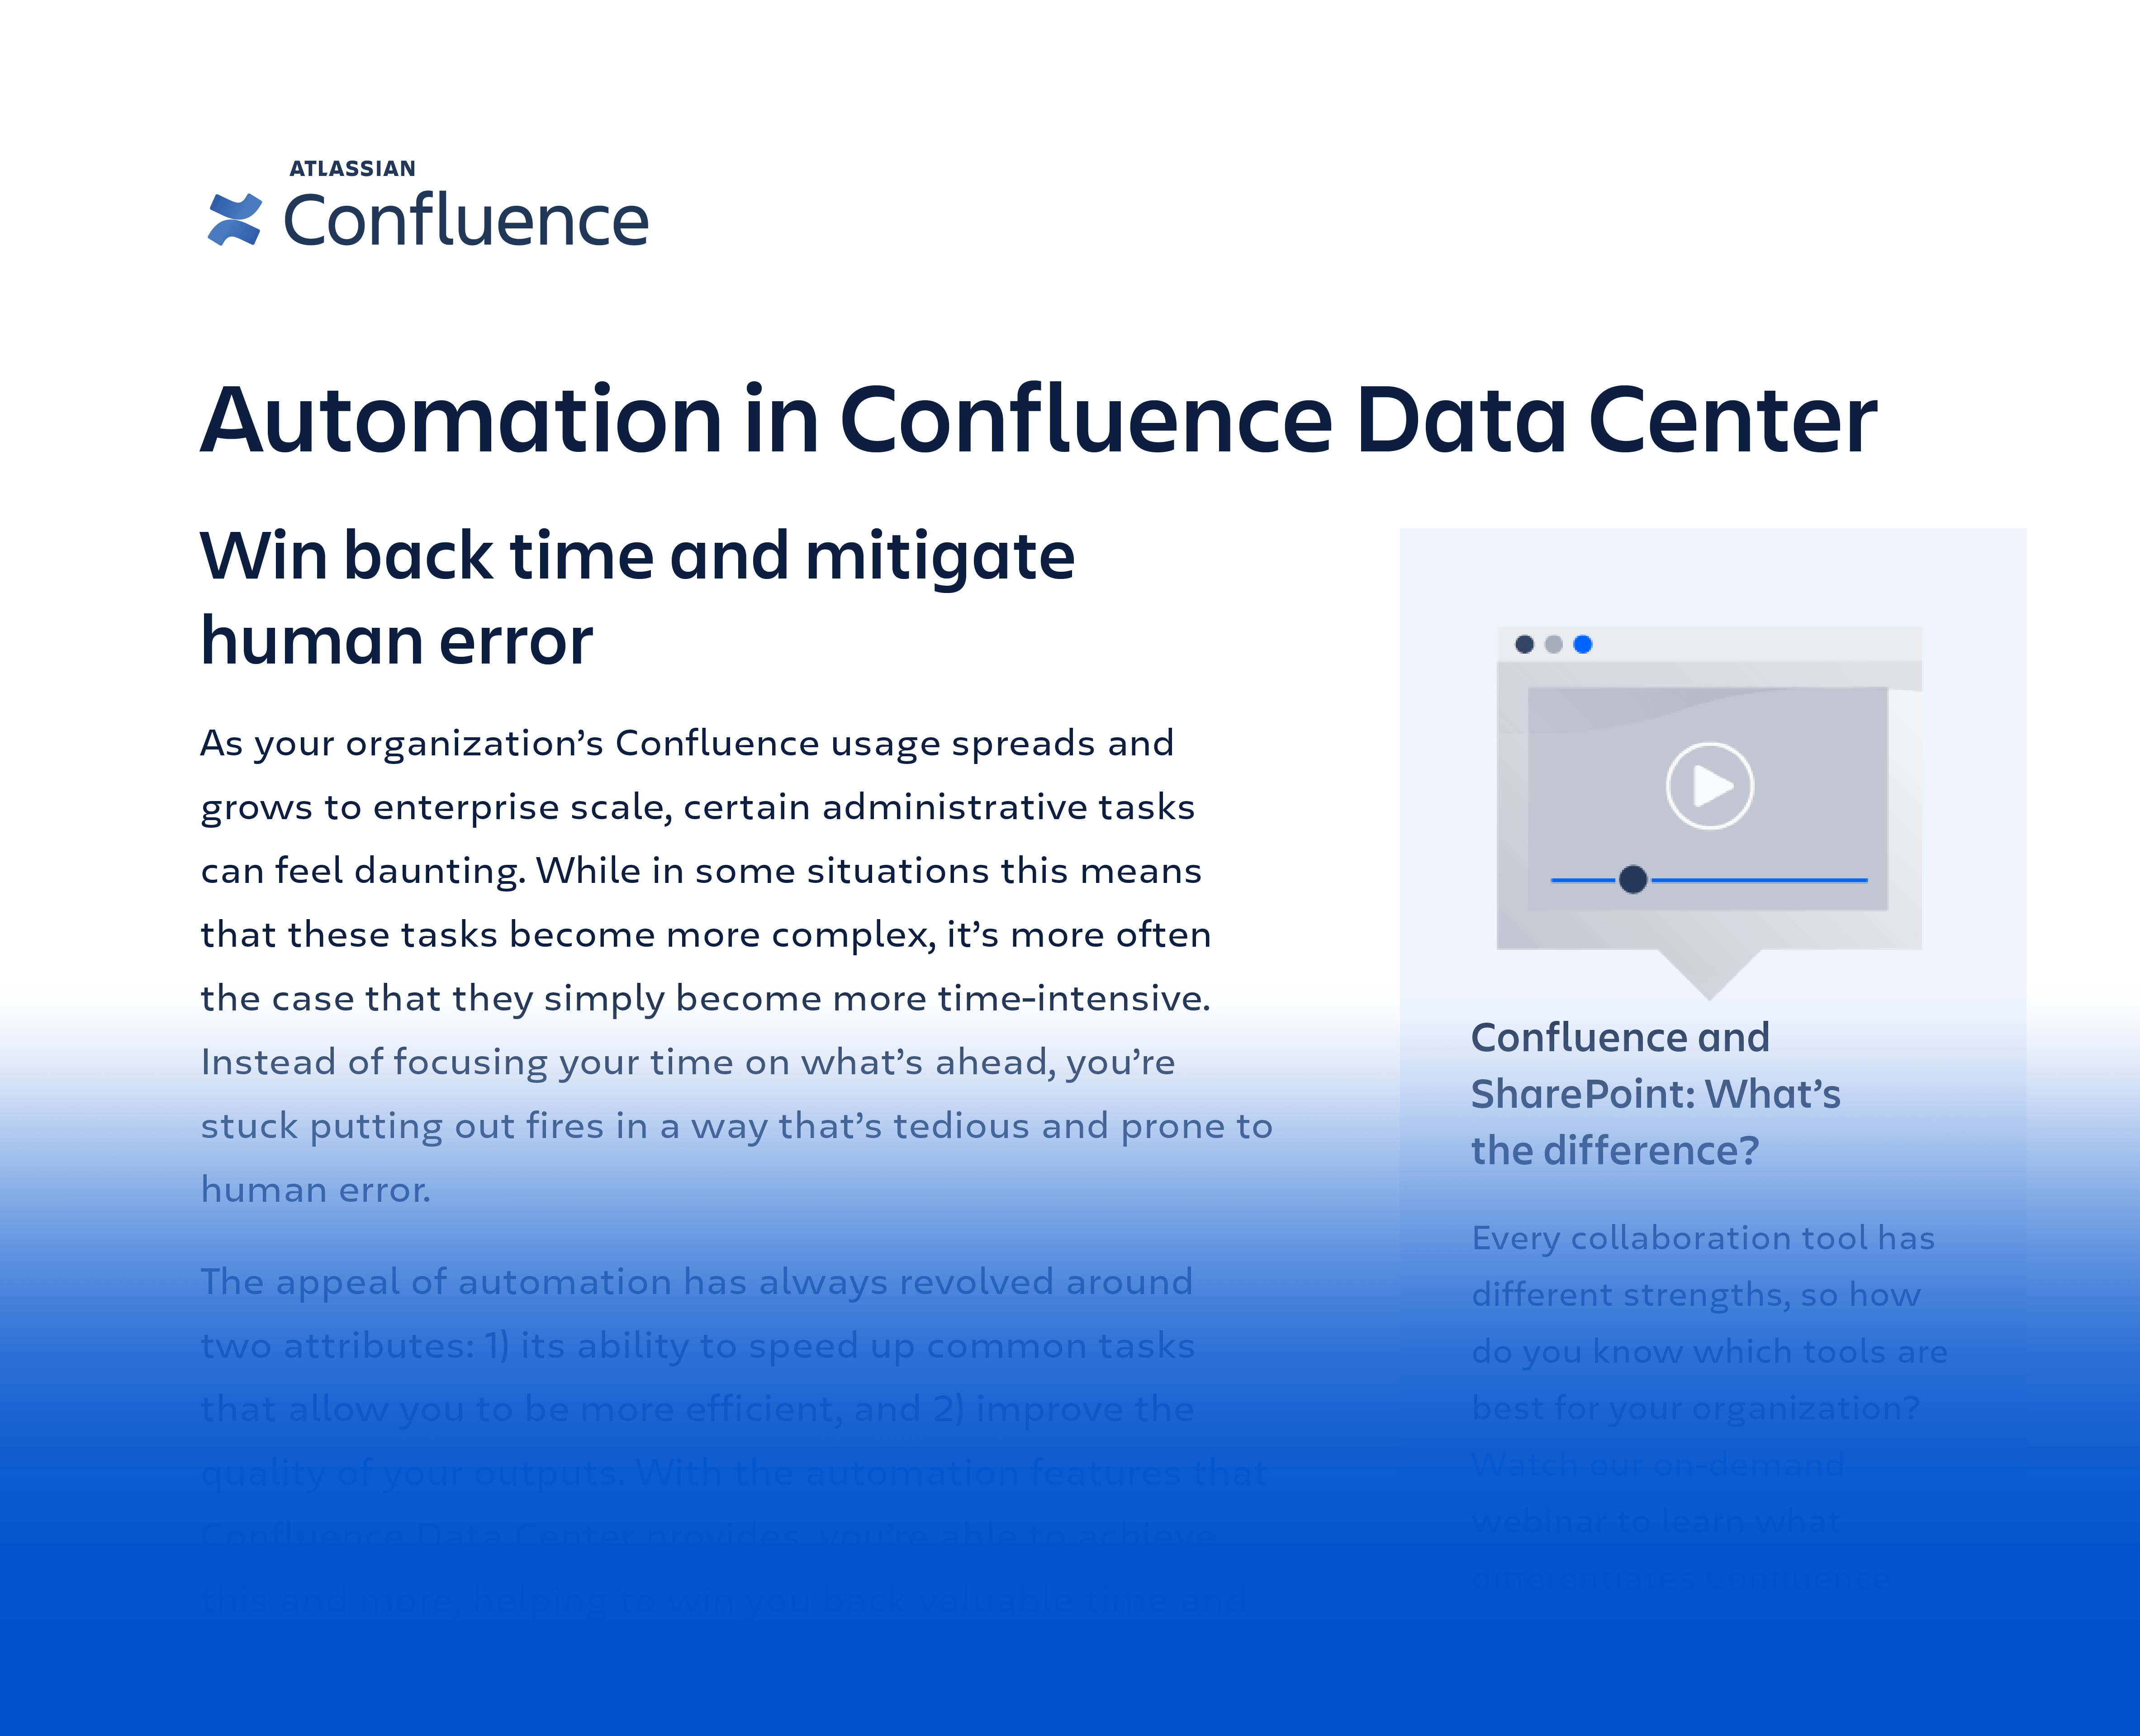 데이터시트: Confluence Data Center의 자동화